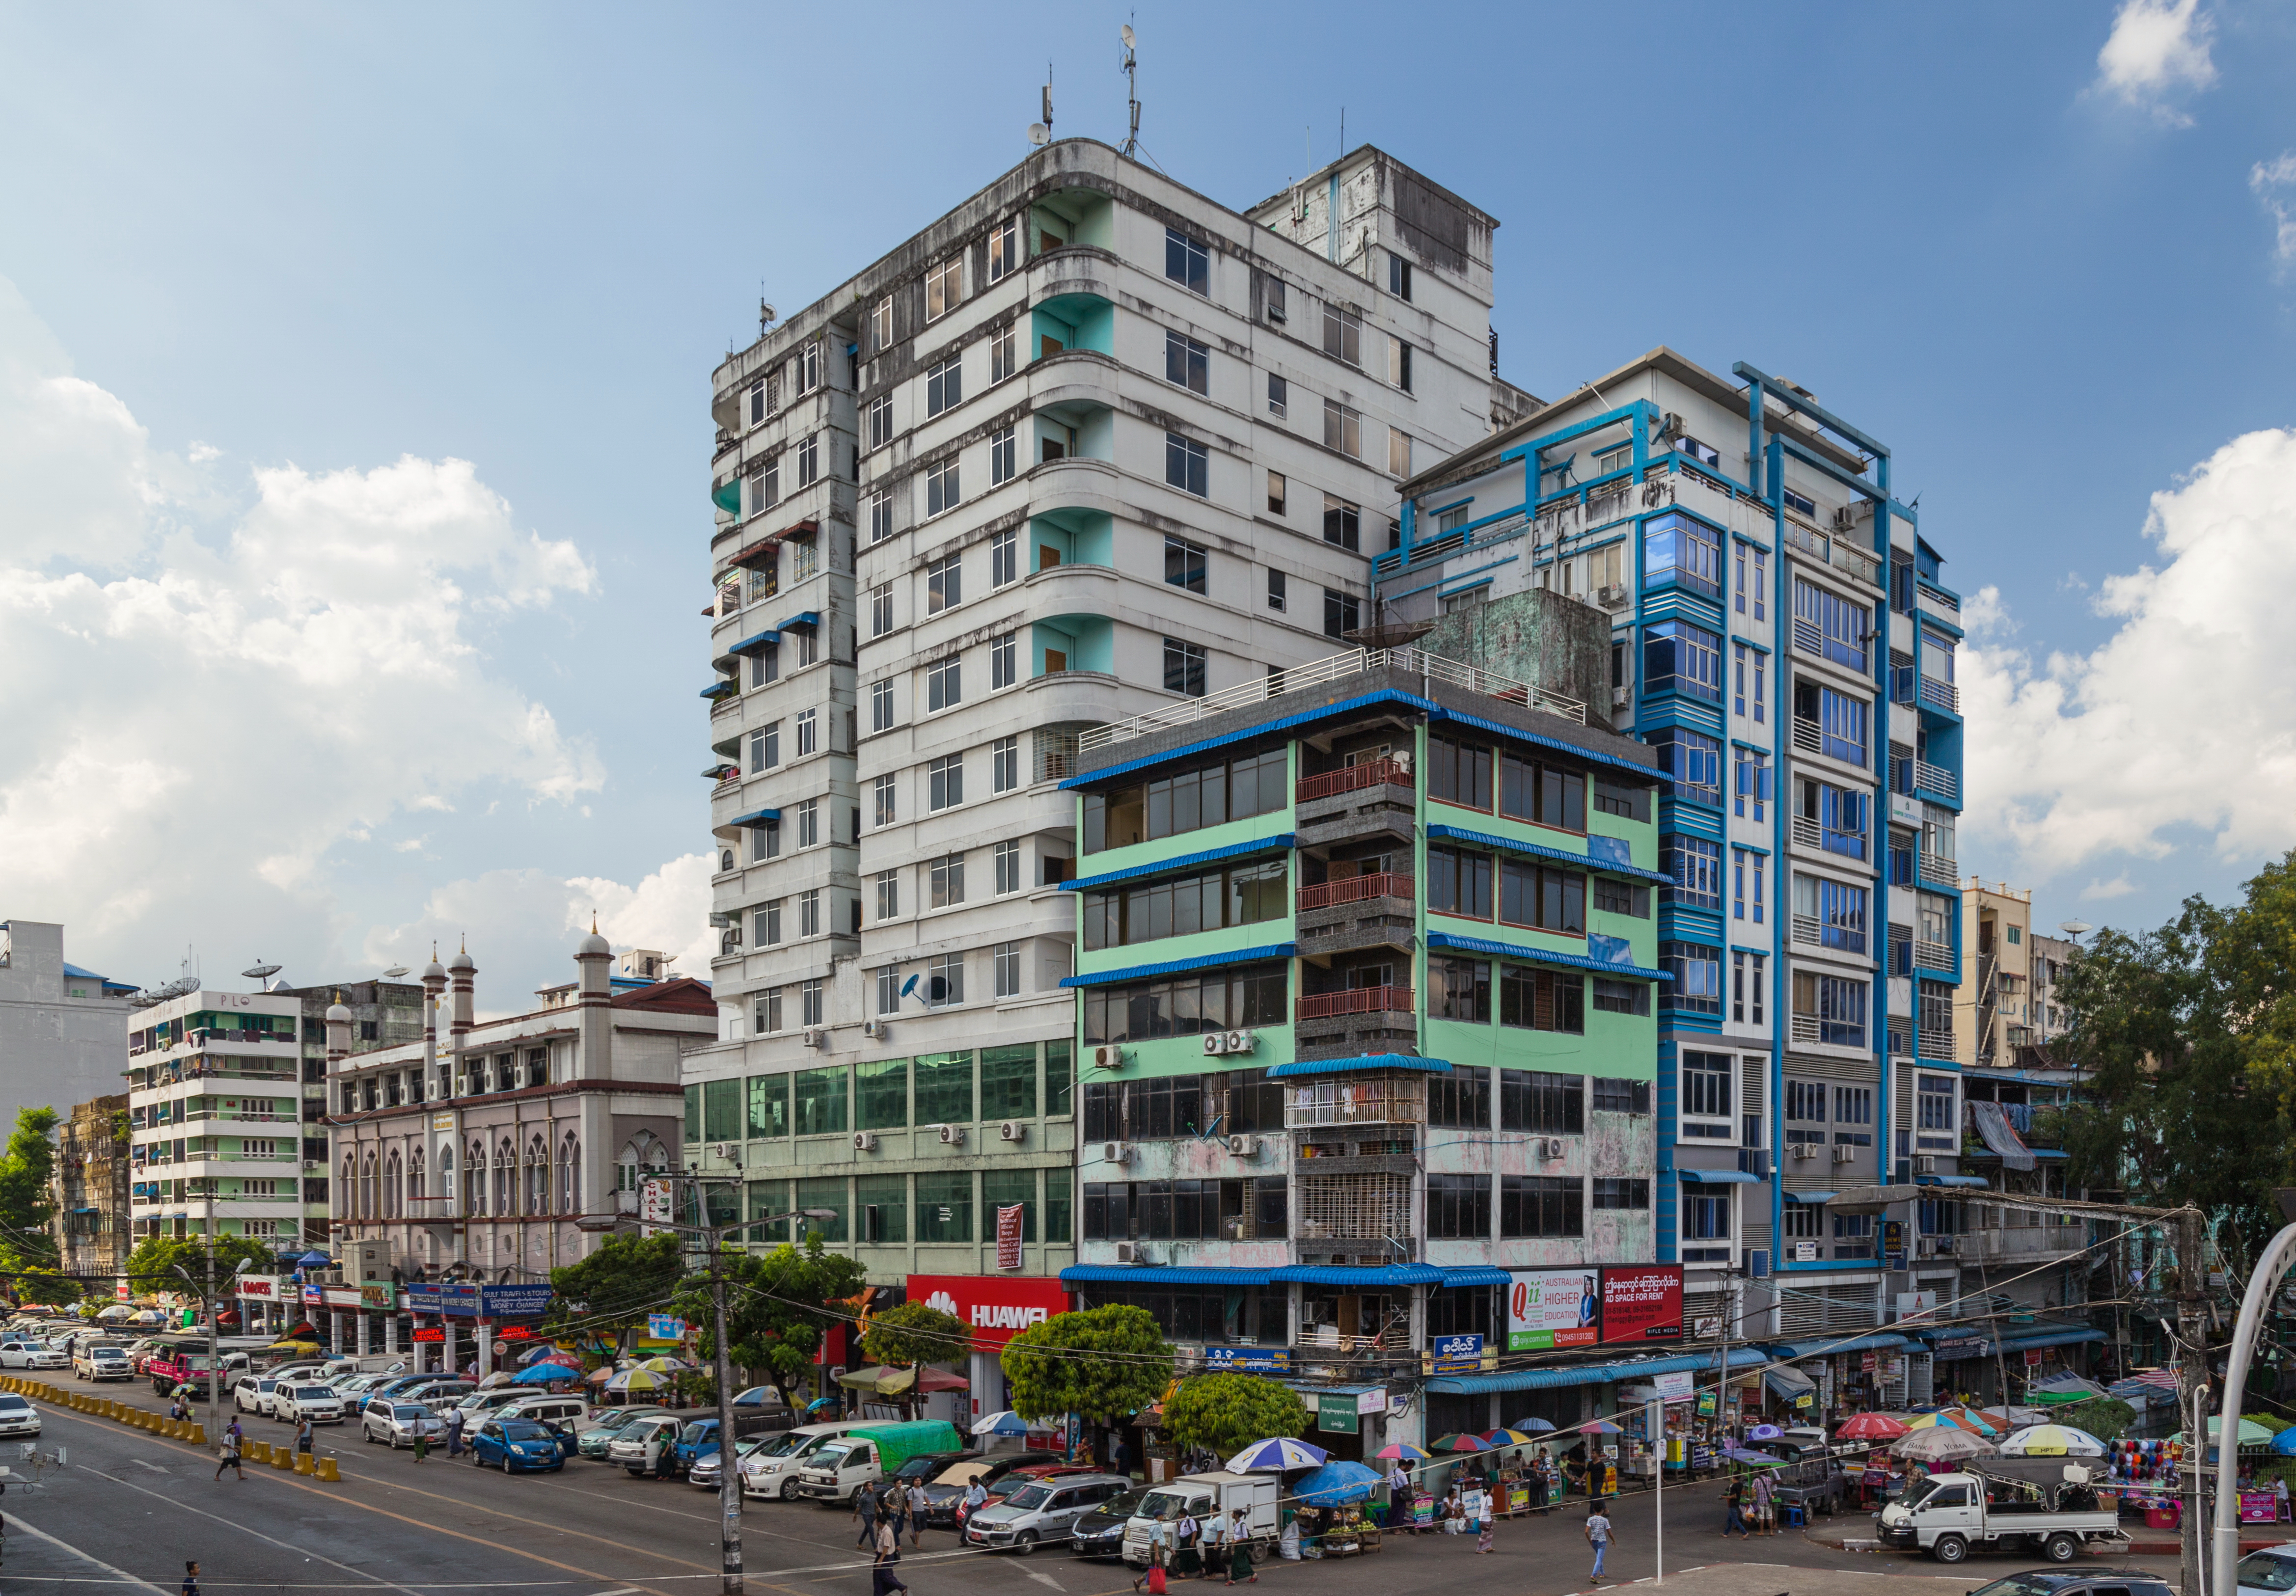 2016 Rangun, Budynek na skrzyżowaniu ulic- Maha Bandula Road i 32nd Street